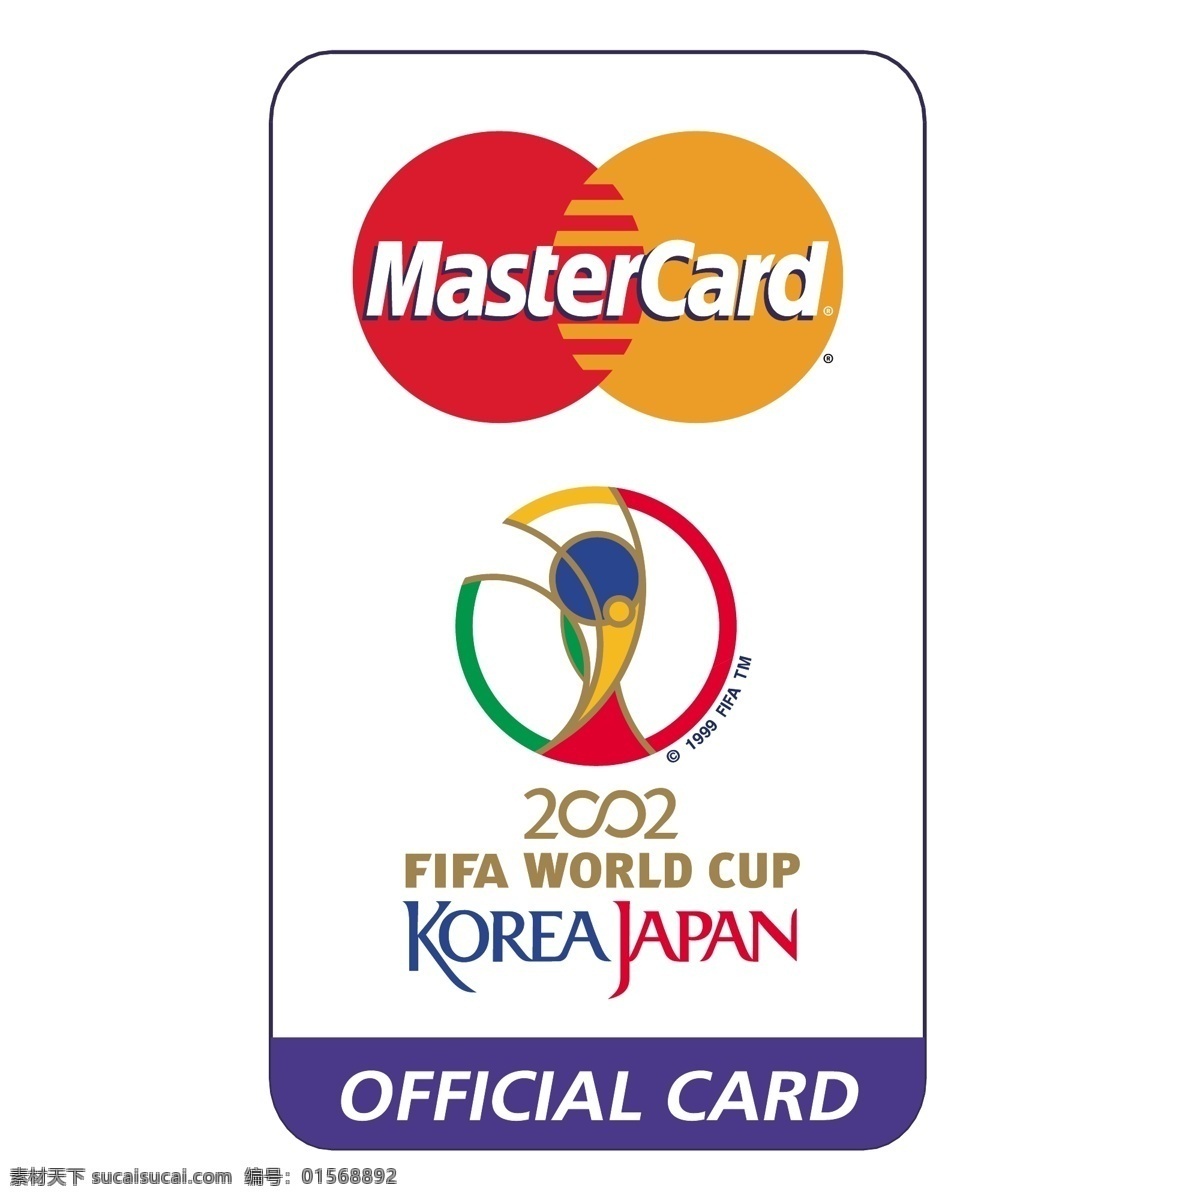 2002 世界杯 赞助商 万事达卡 世界 杯 杯的赞助商 欧洲 信用卡 国际足联 主办 向量 欧洲信用卡 白色